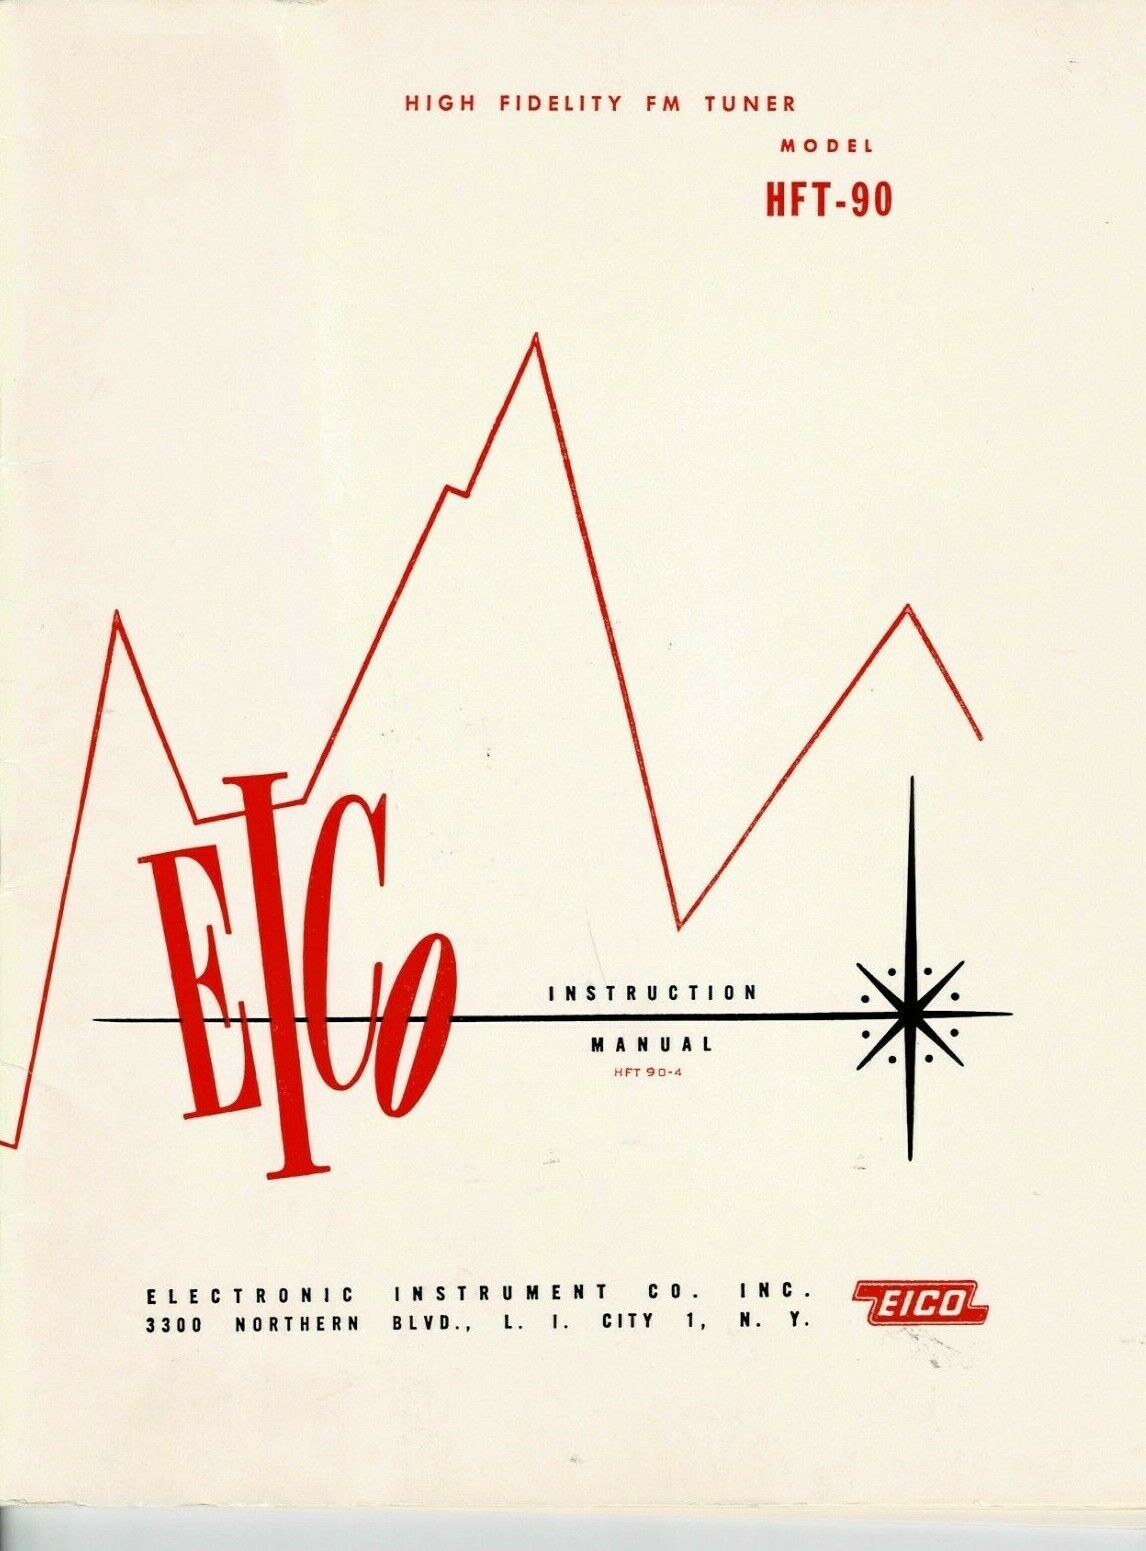 EICO-High Fidelity FM Tuner-Model HFT-90-Instruction Manual 